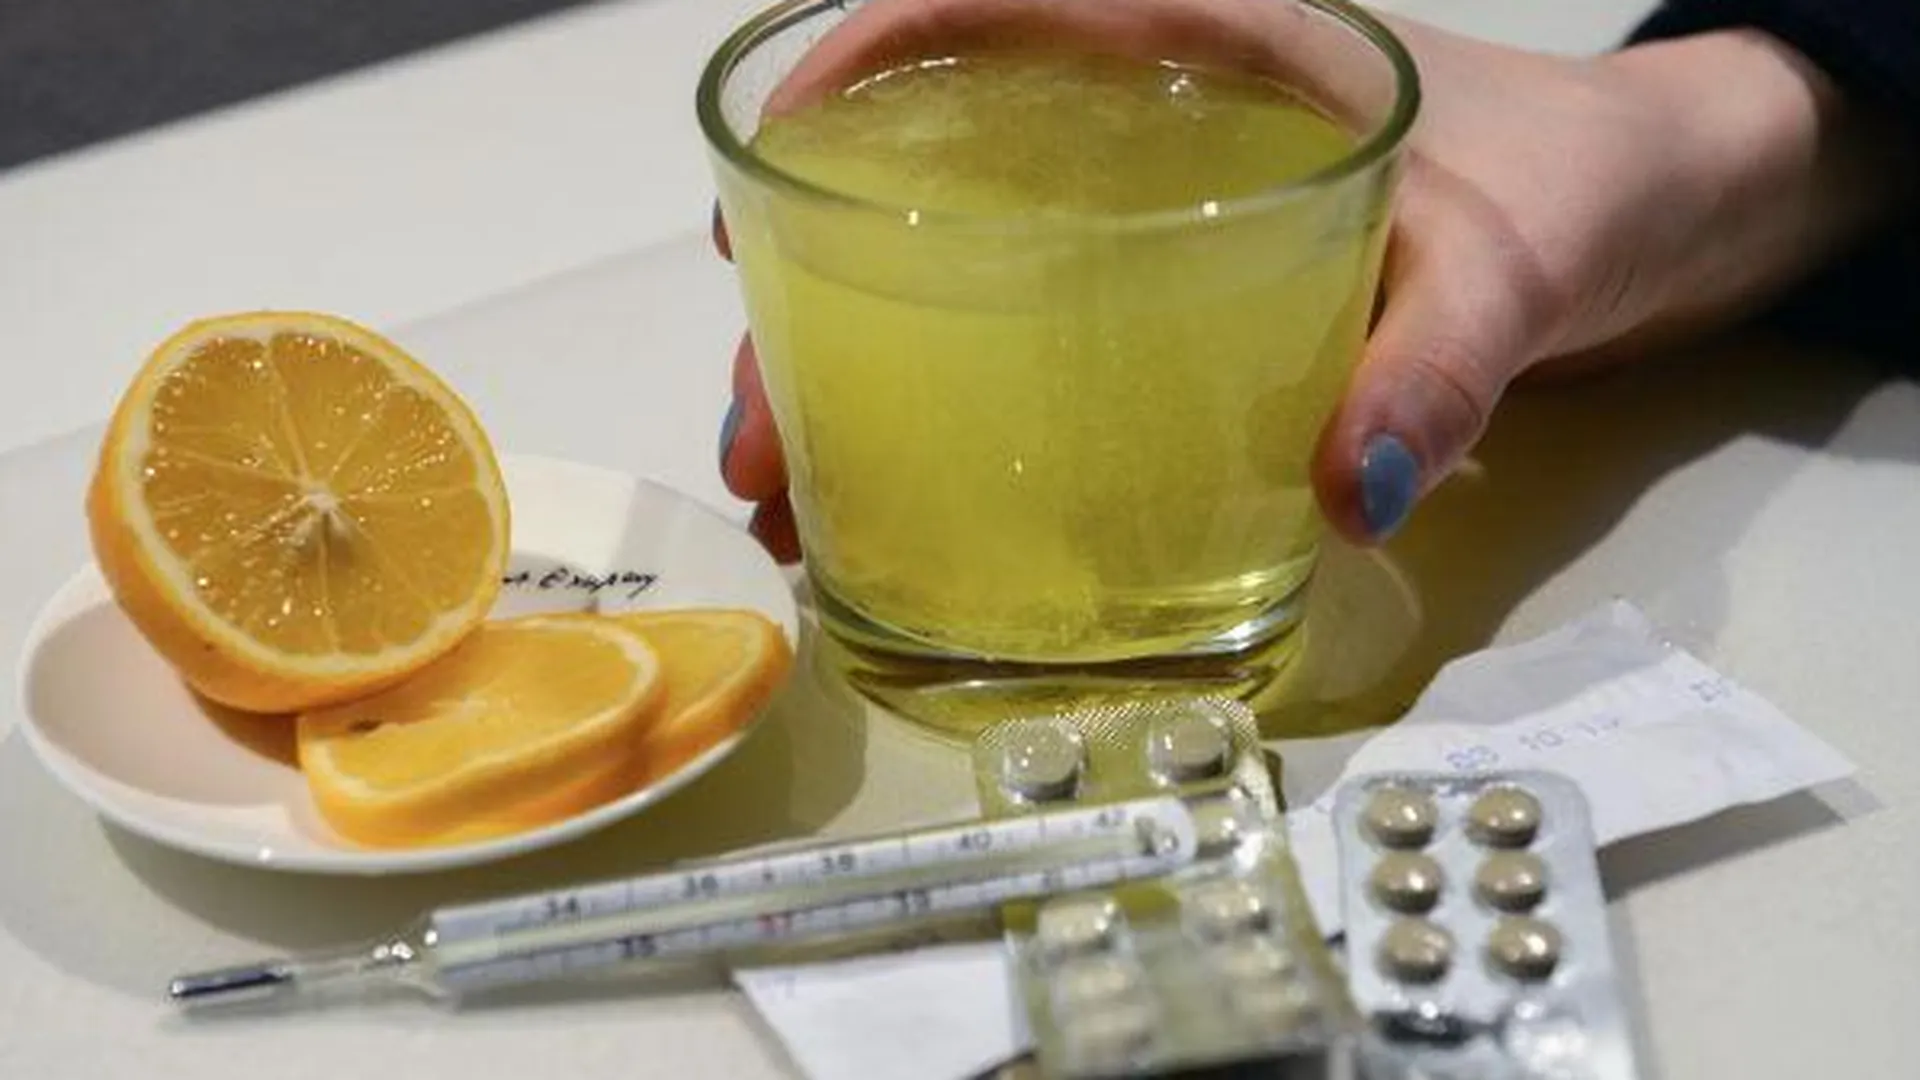 Цены на мед, чеснок и лимоны снижаются в МО в рамках борьбы с гриппом